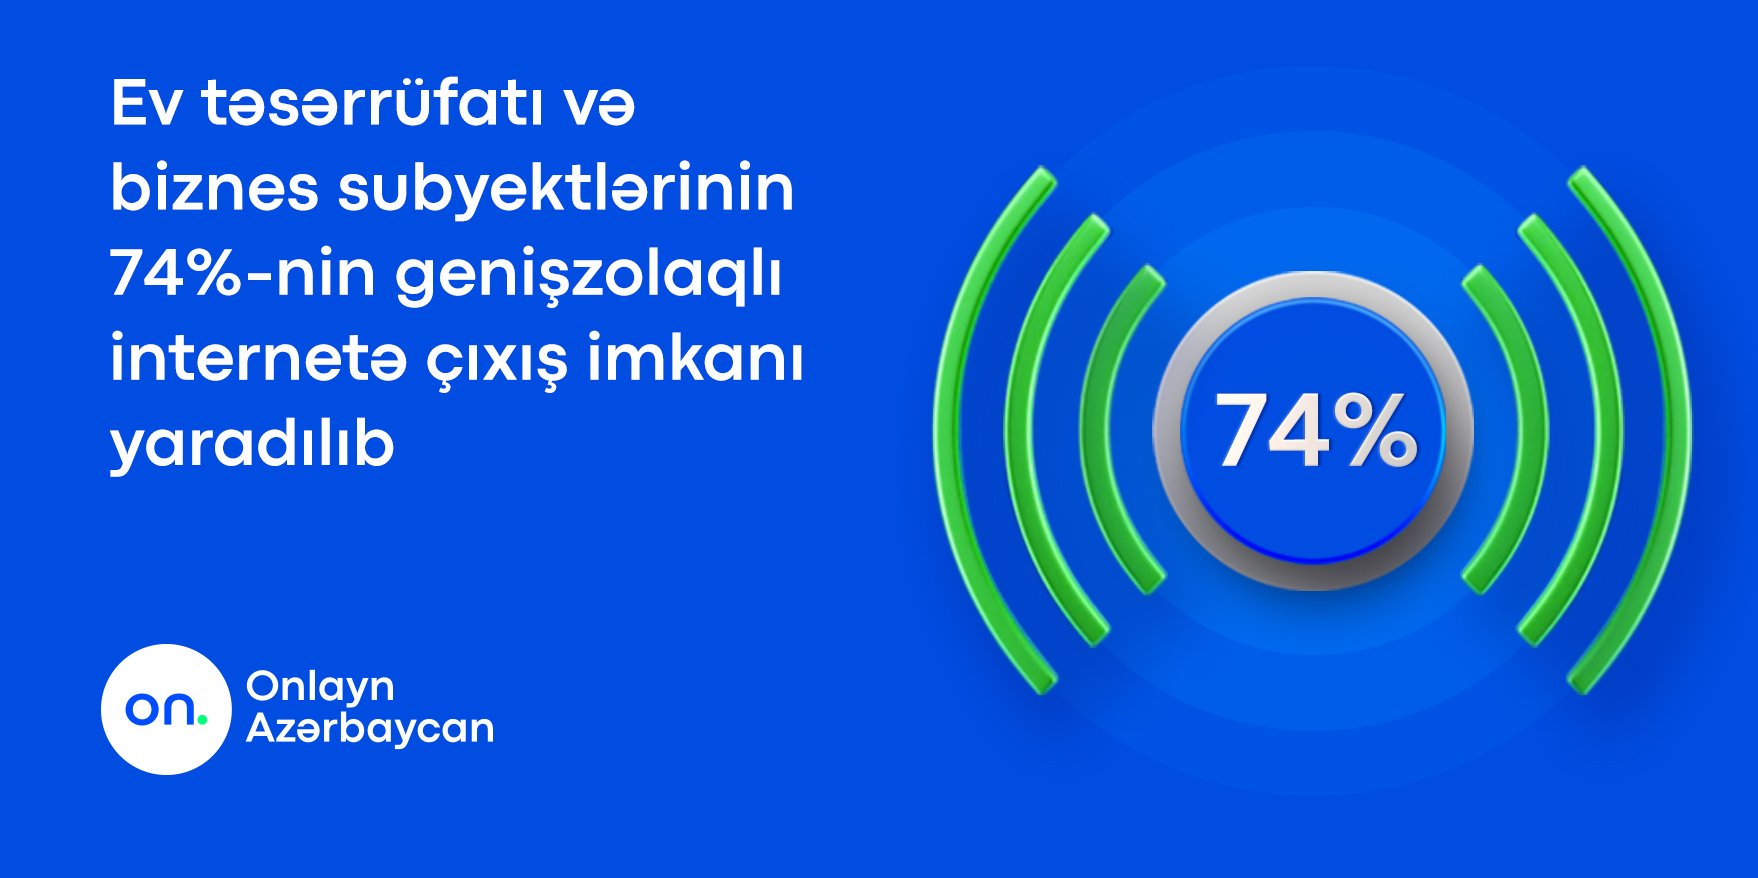 Azərbaycanda 74% genişzolaqlı internetə çıxış imkanı yaradılıb